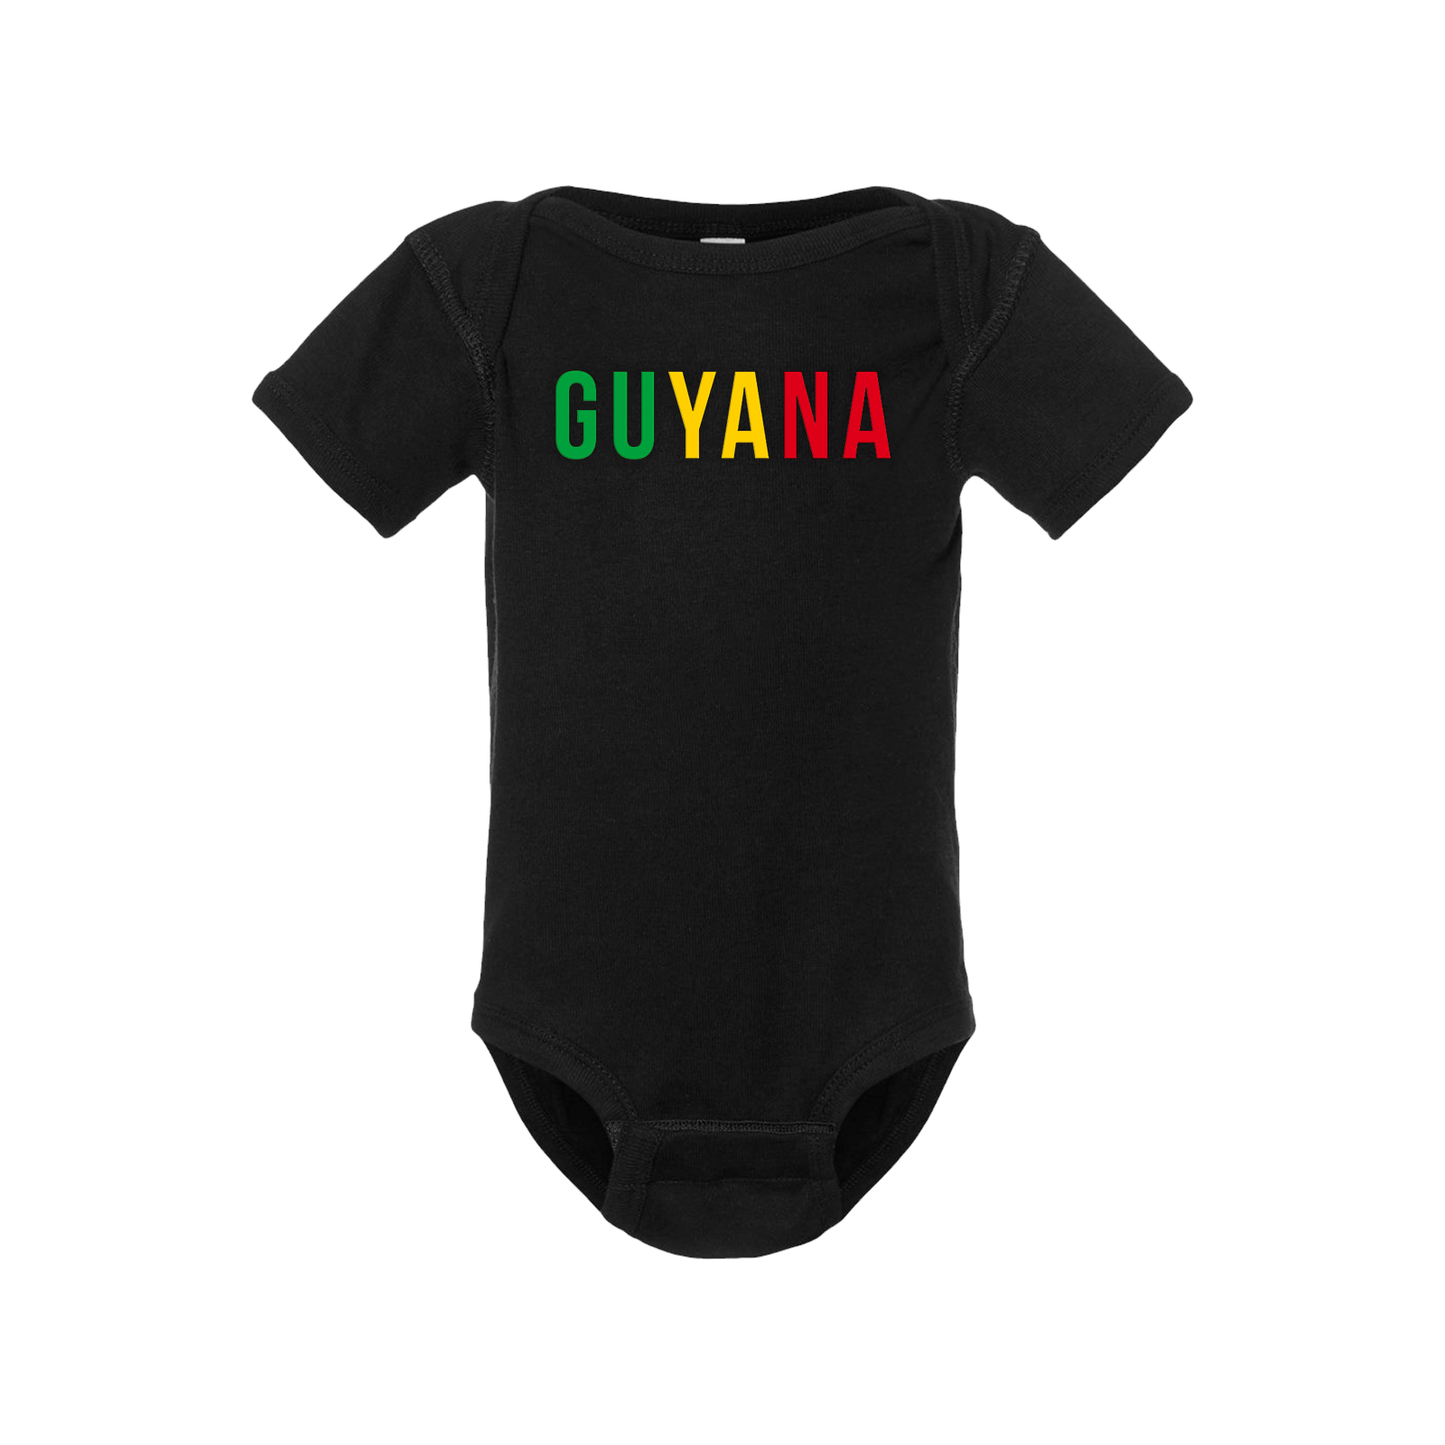 Guyana Short Sleeve Onesie - Babies & Toddlers